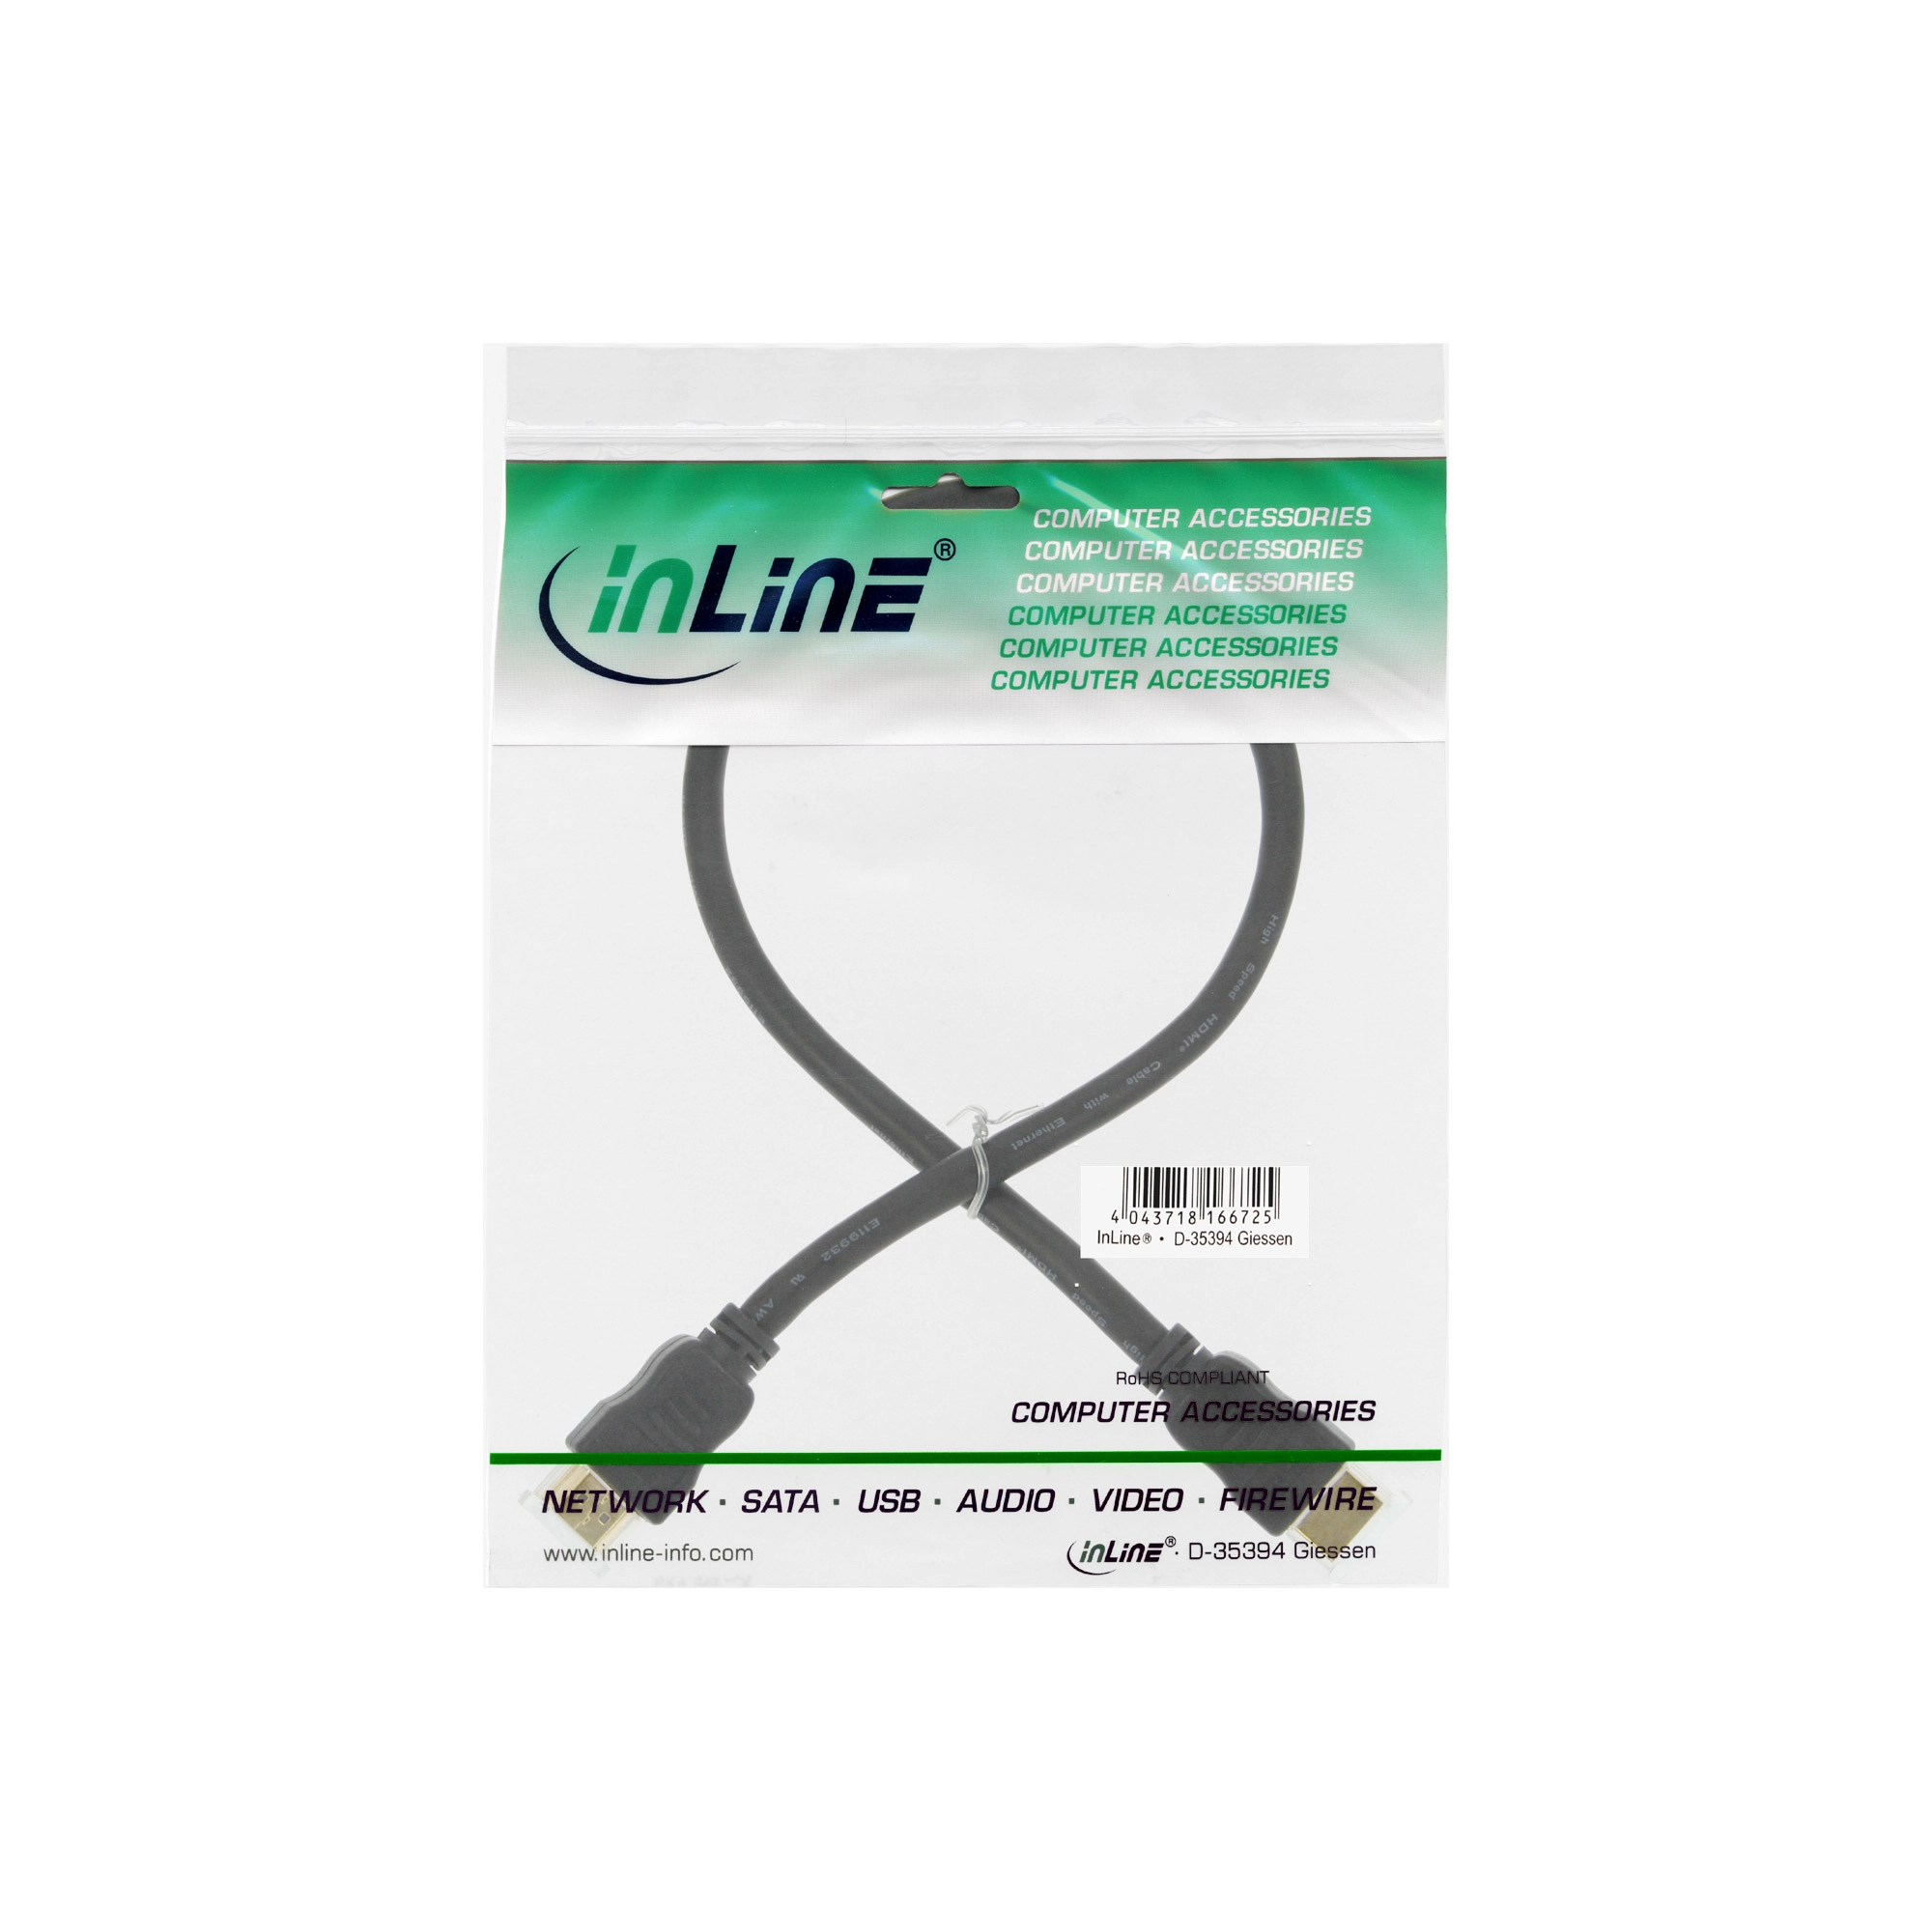 InLine® HDMI Kabel, HDMI-High Speed mit Ethernet, Stecker / Stecker, schwarz / gold, 7,5m